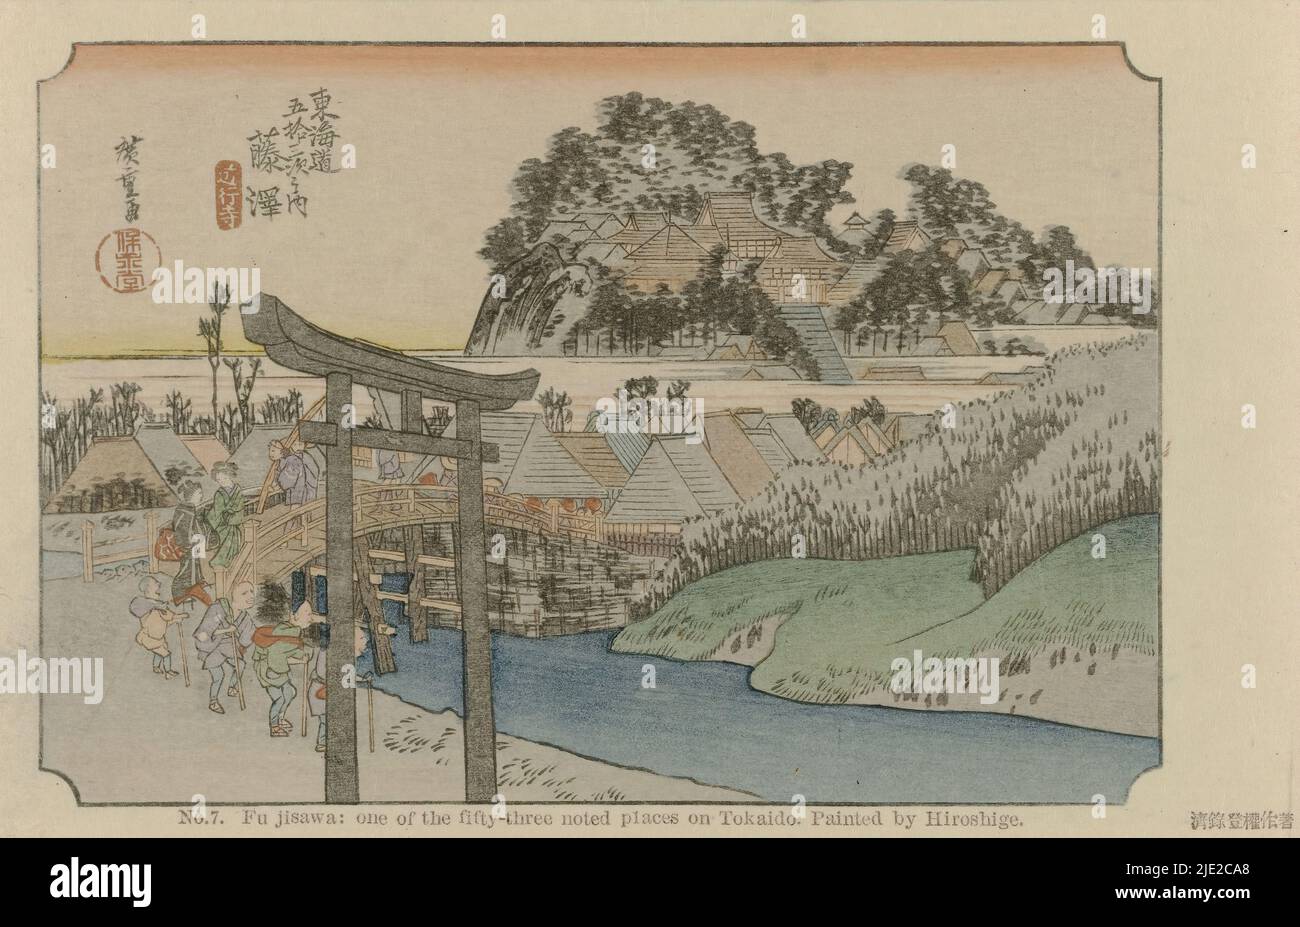 Fujisawa, 7. Fujisawa: Uno dei cinquantatré posti noti a Tokaido. Dipinto da Hiroshige (titolo su oggetto), il Tôkaidô di Hiroshige (titolo della serie), Hiroshige no fude Tôkaidô (titolo della serie su oggetto), i viaggiatori attraversano un piccolo ponte verso un villaggio, in primo piano un cancello d'ingresso (torii)., dopo stampa da: Hiroshige (i) , Utagawa, (menzionato sull'oggetto), editore: Fujisawa Bunjirô (oggetto), Giappone, 1906, cartone, legno colorato, altezza 90 mm x larghezza 141 mm Foto Stock